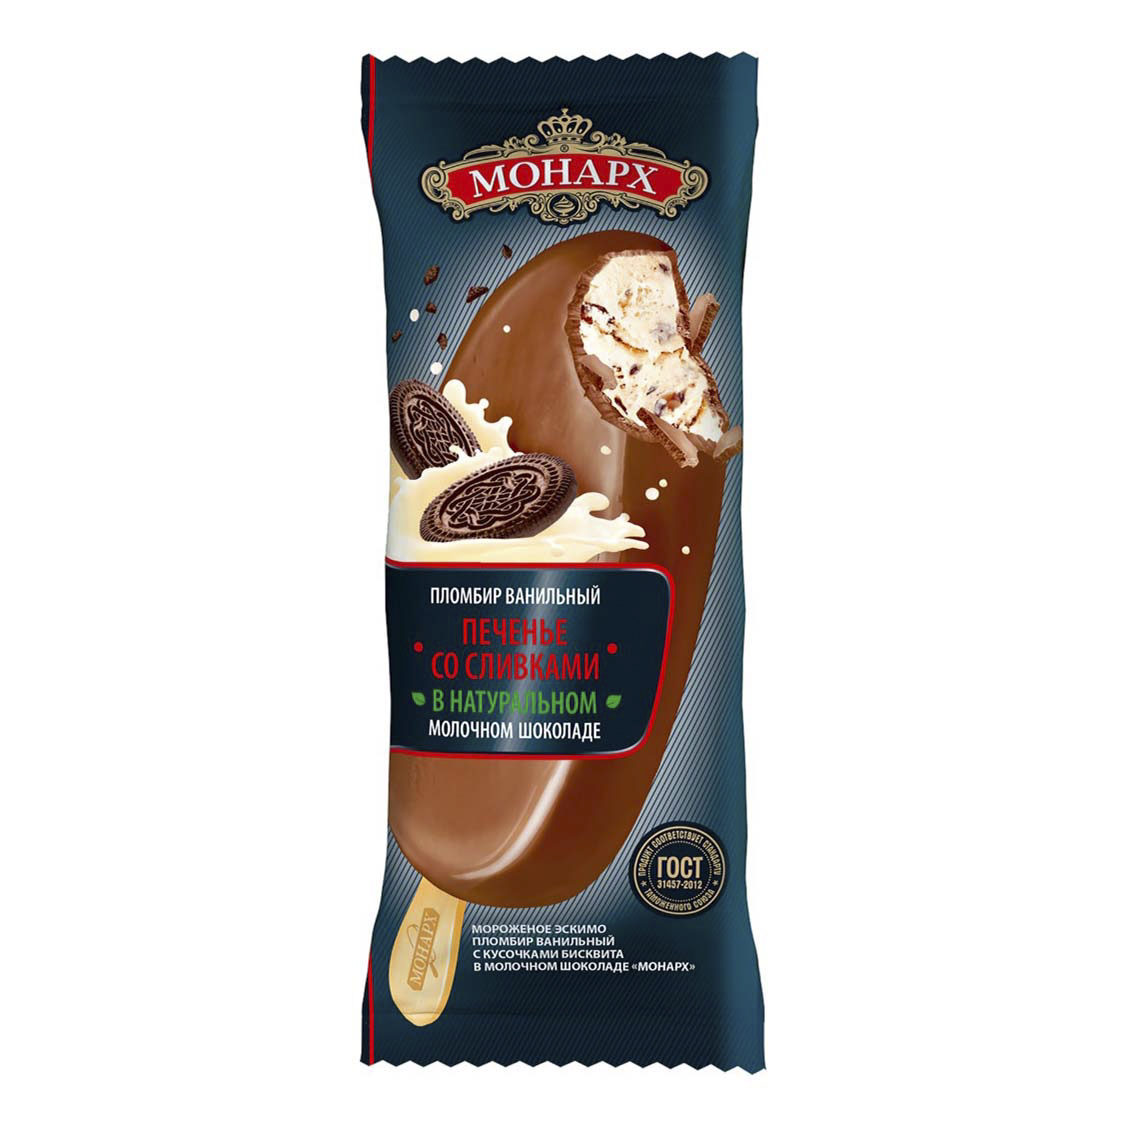 Мороженое Монарх Пломбир ванильный эскимо бисквит со сливками 90 г